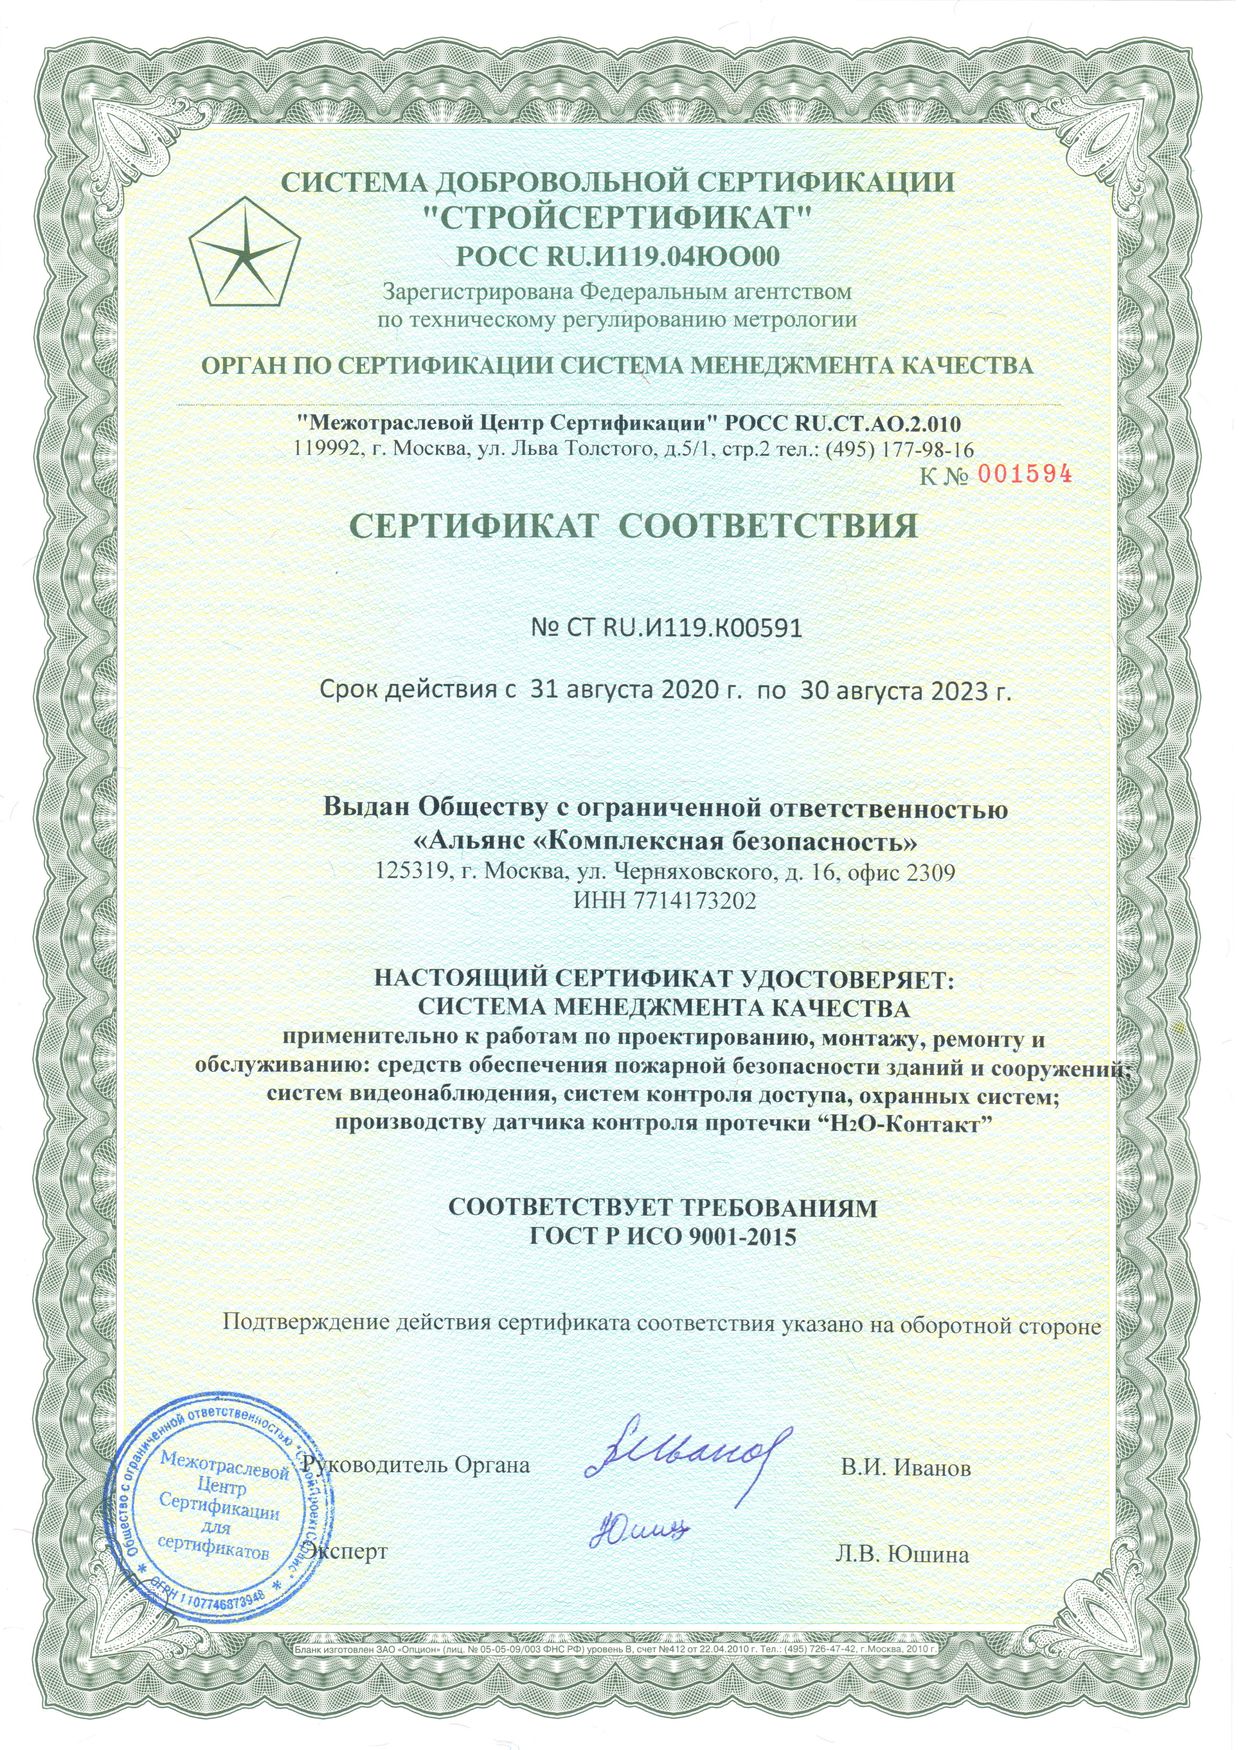 СМК Альянс «Комплексная безопасность» сертифицирована по ISO 9001:2015